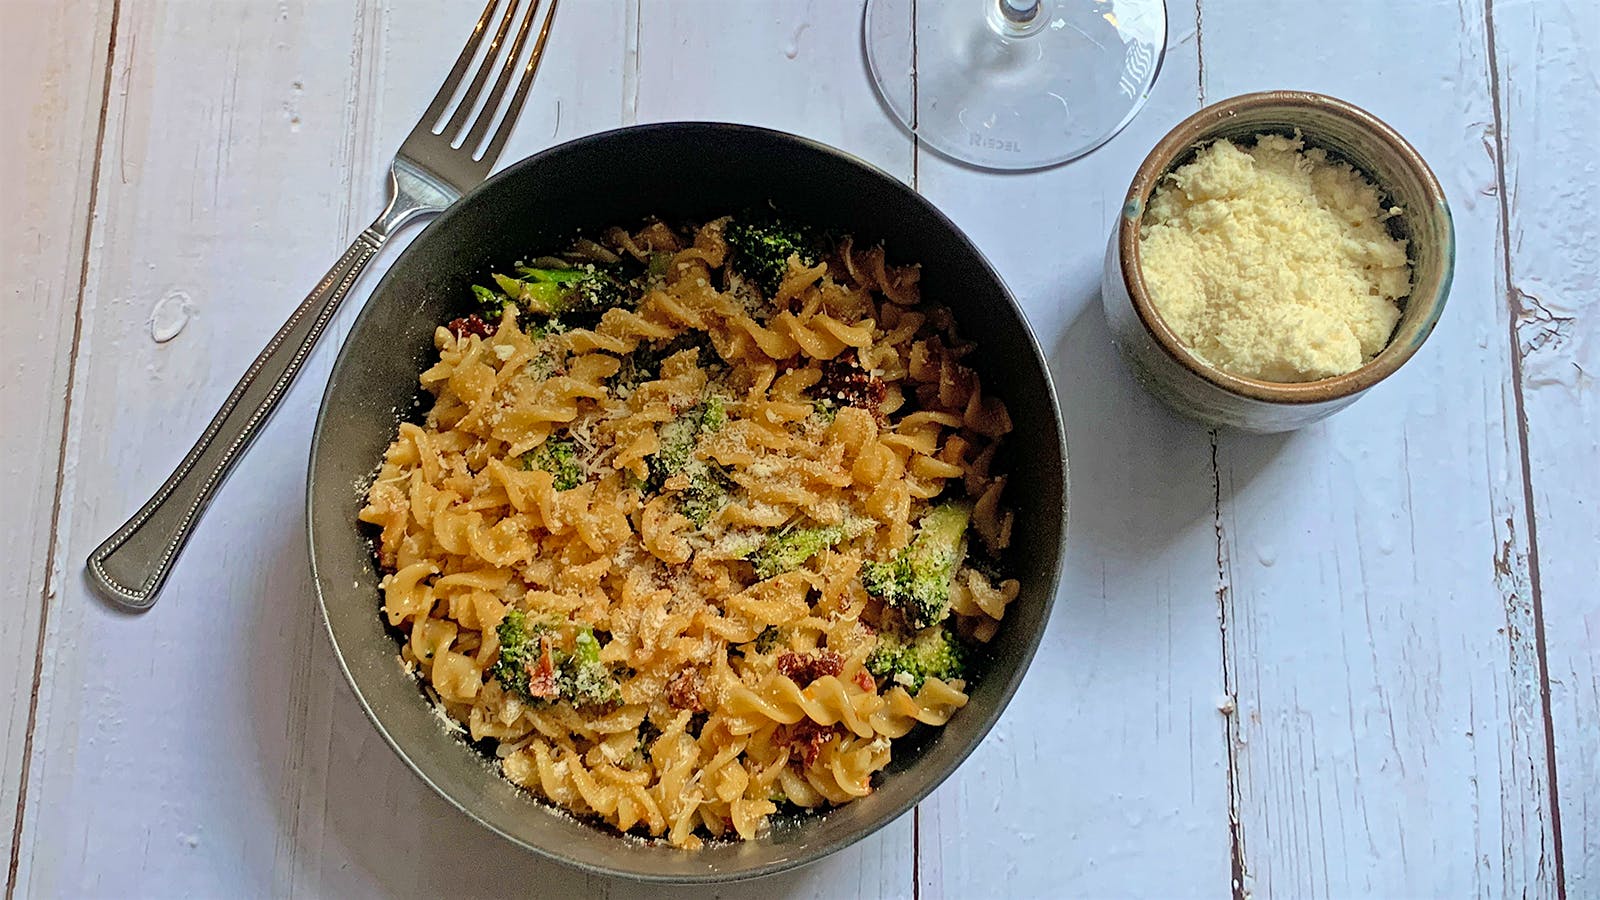 8 & $20: Cheesy Broccoli Pasta with Sun-Dried Tomato and Grechetto